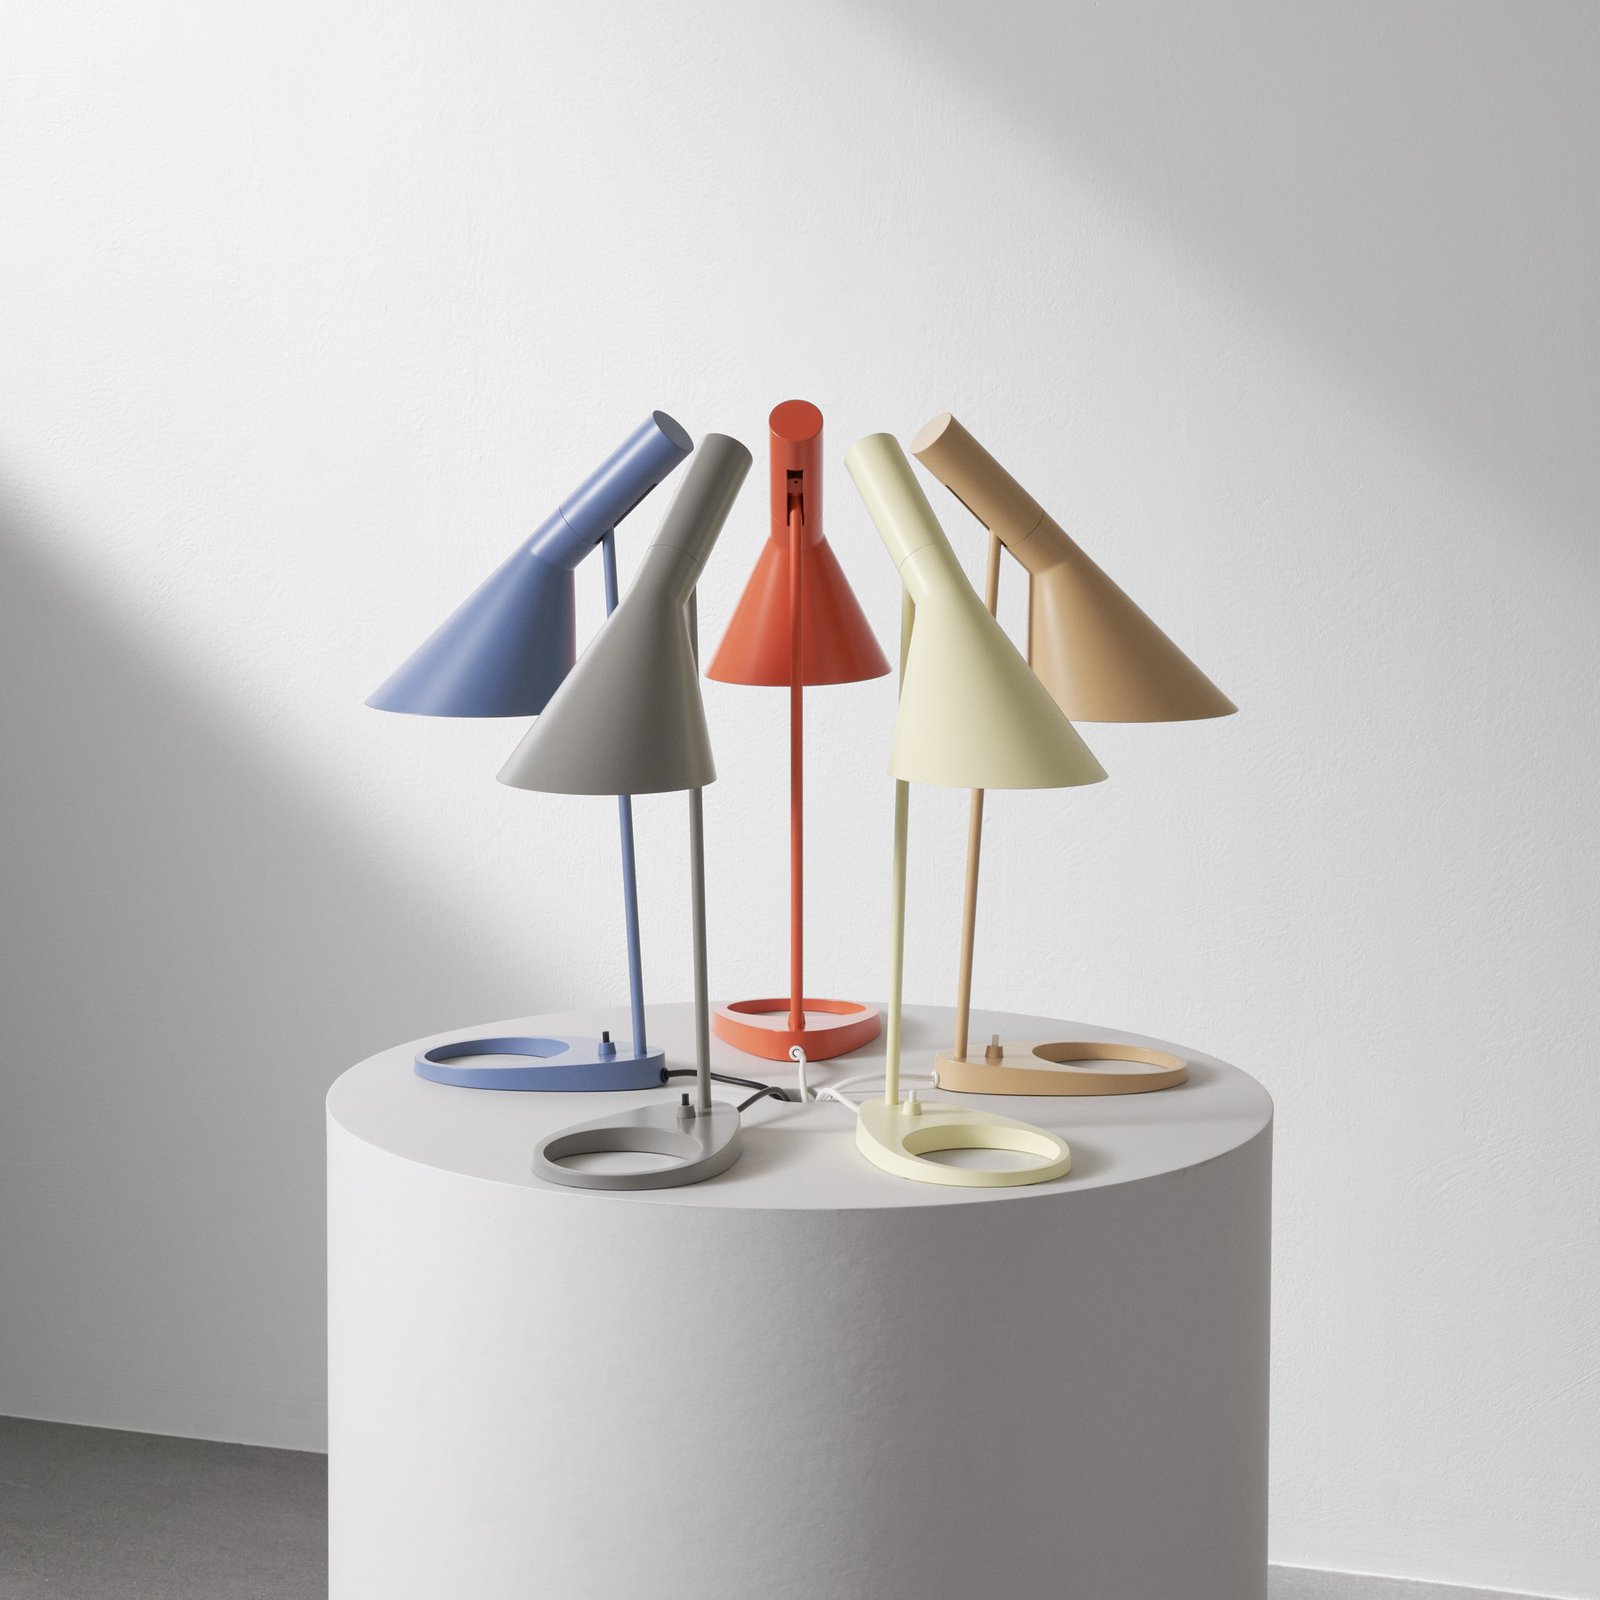 Designová stolní lampa Louis Poulsen AJ modrošedá